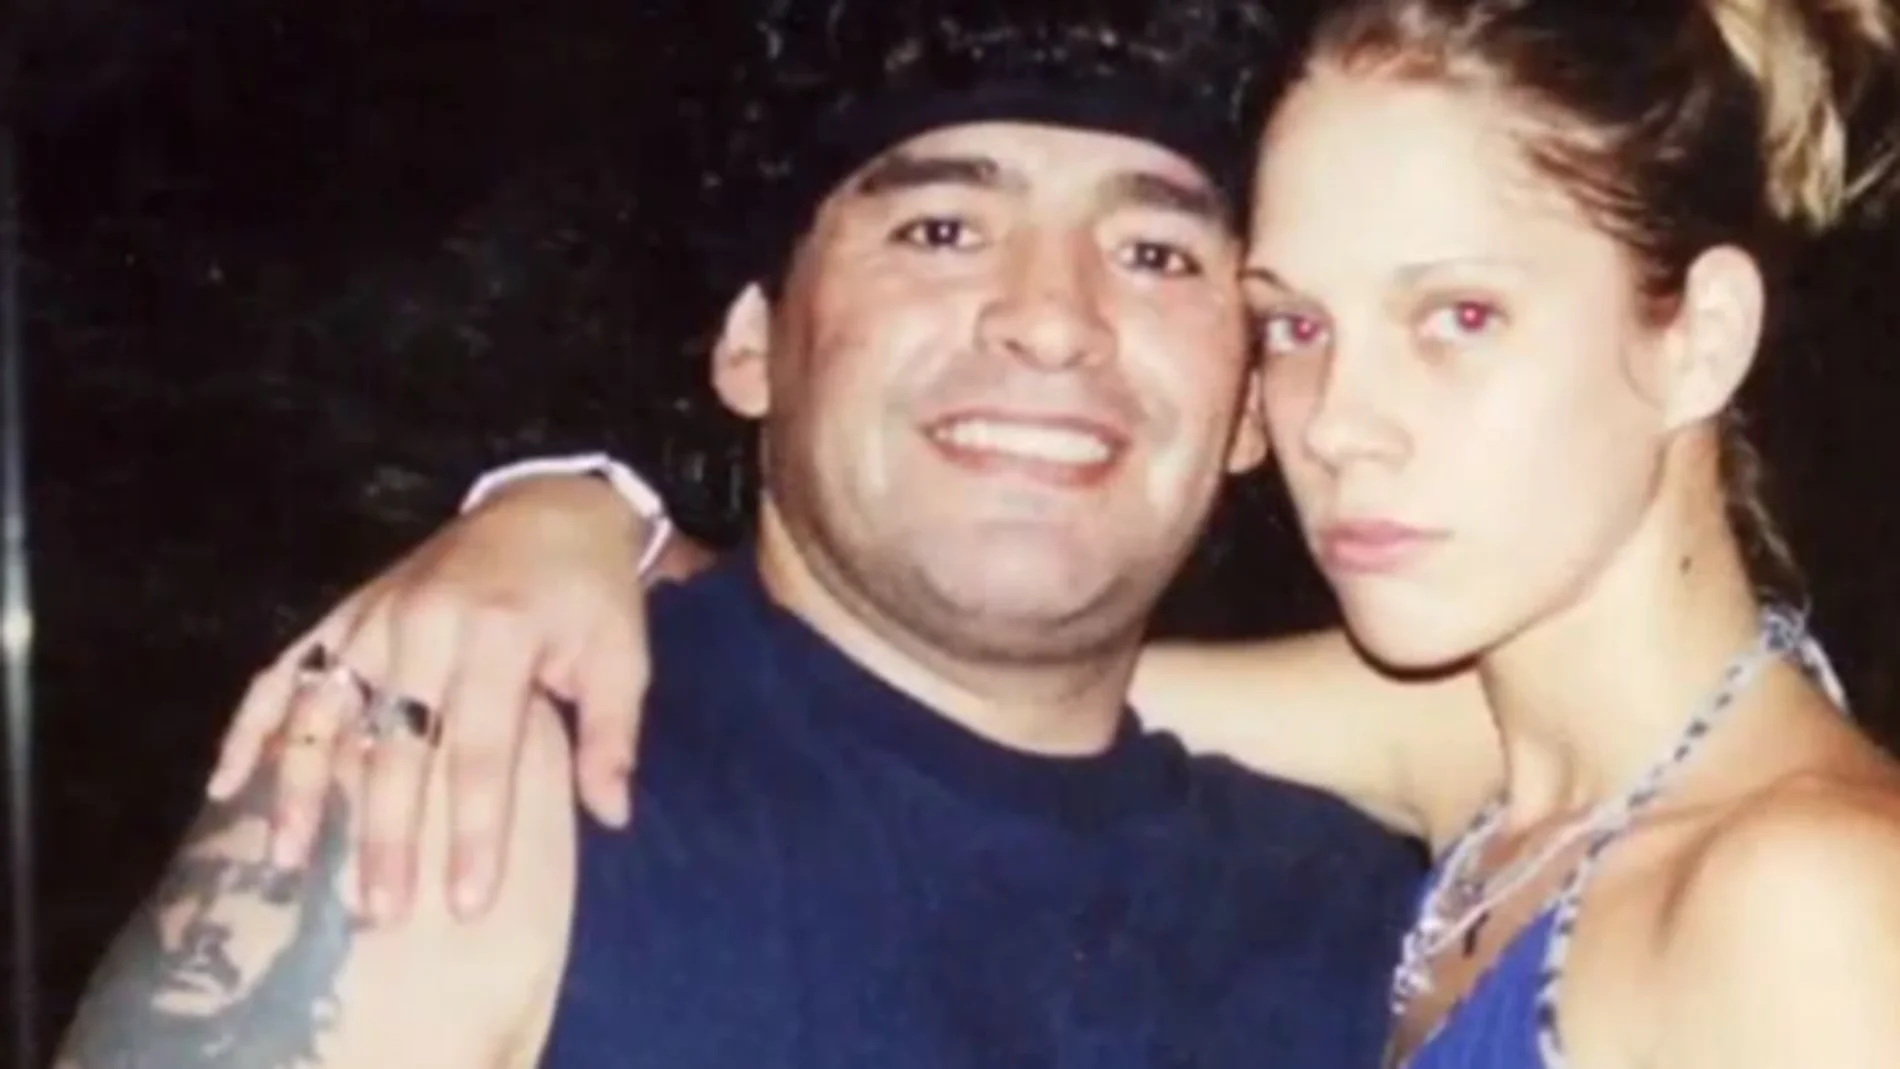 Una mujer desvela su relación con Maradona cuando era menor de edad: "No podía decir que no"